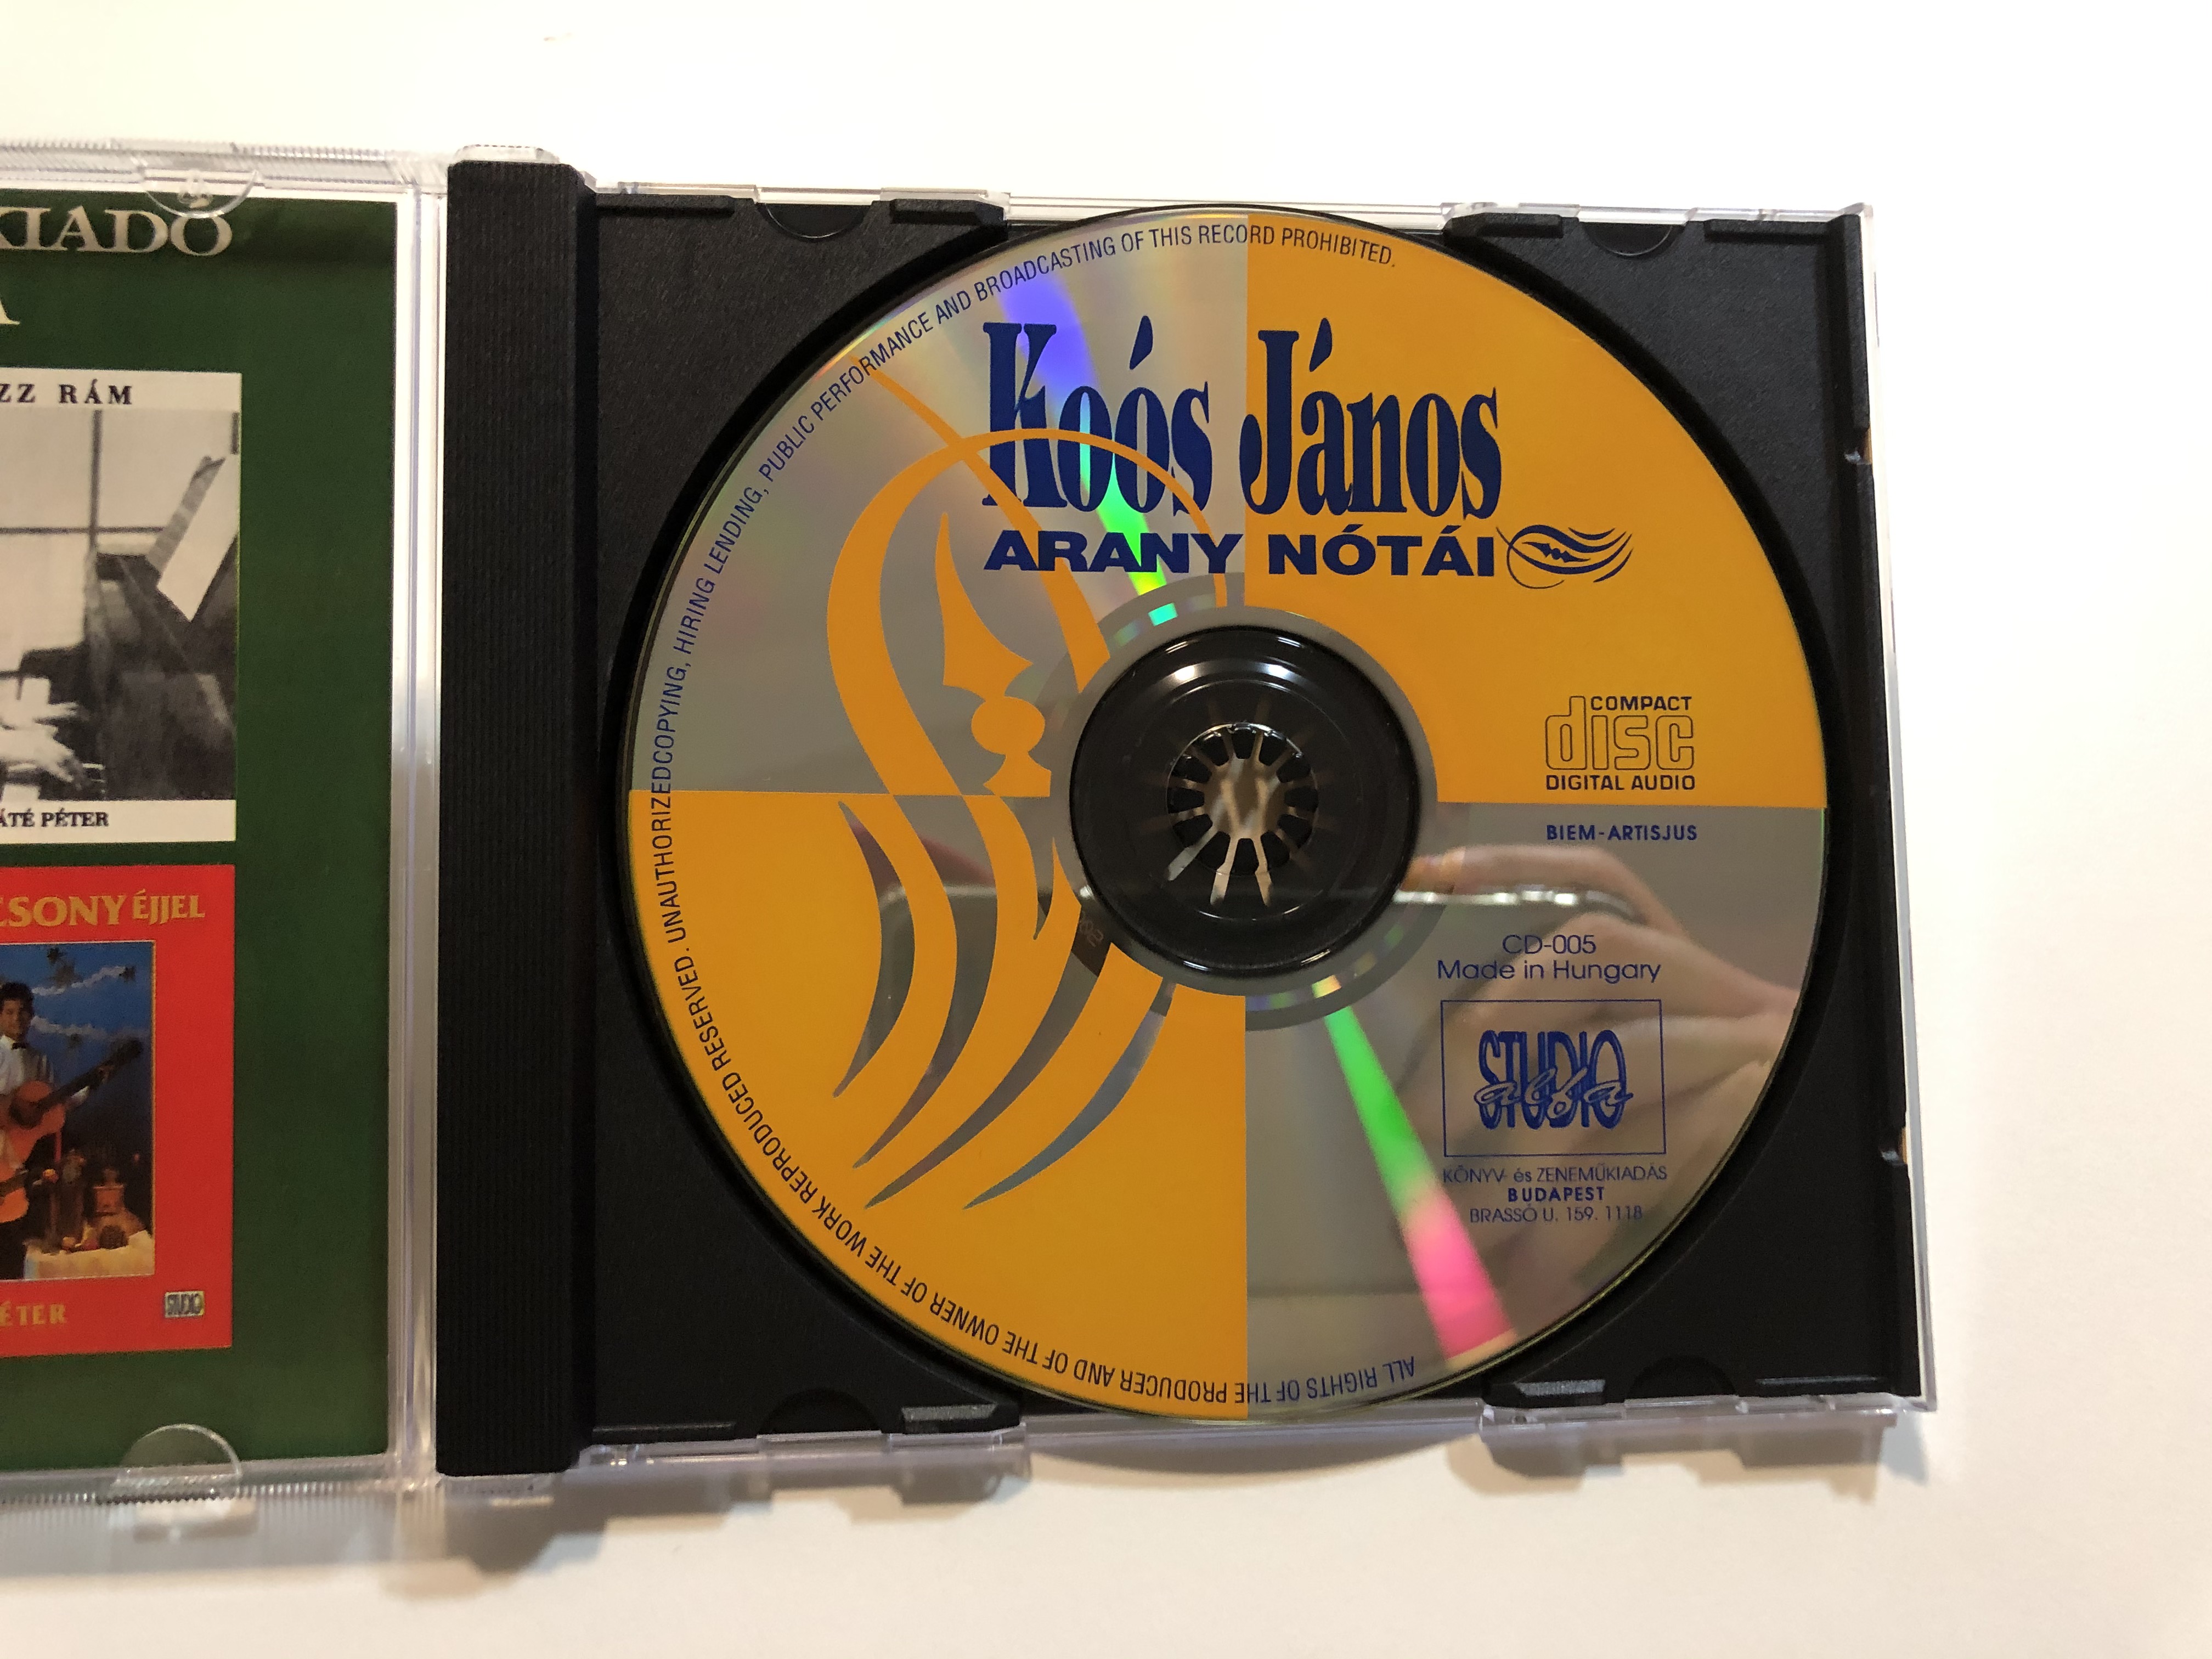 ko-s-j-nos-arany-n-t-i-alfa-studio-audio-cd-cd-005-4-.jpg